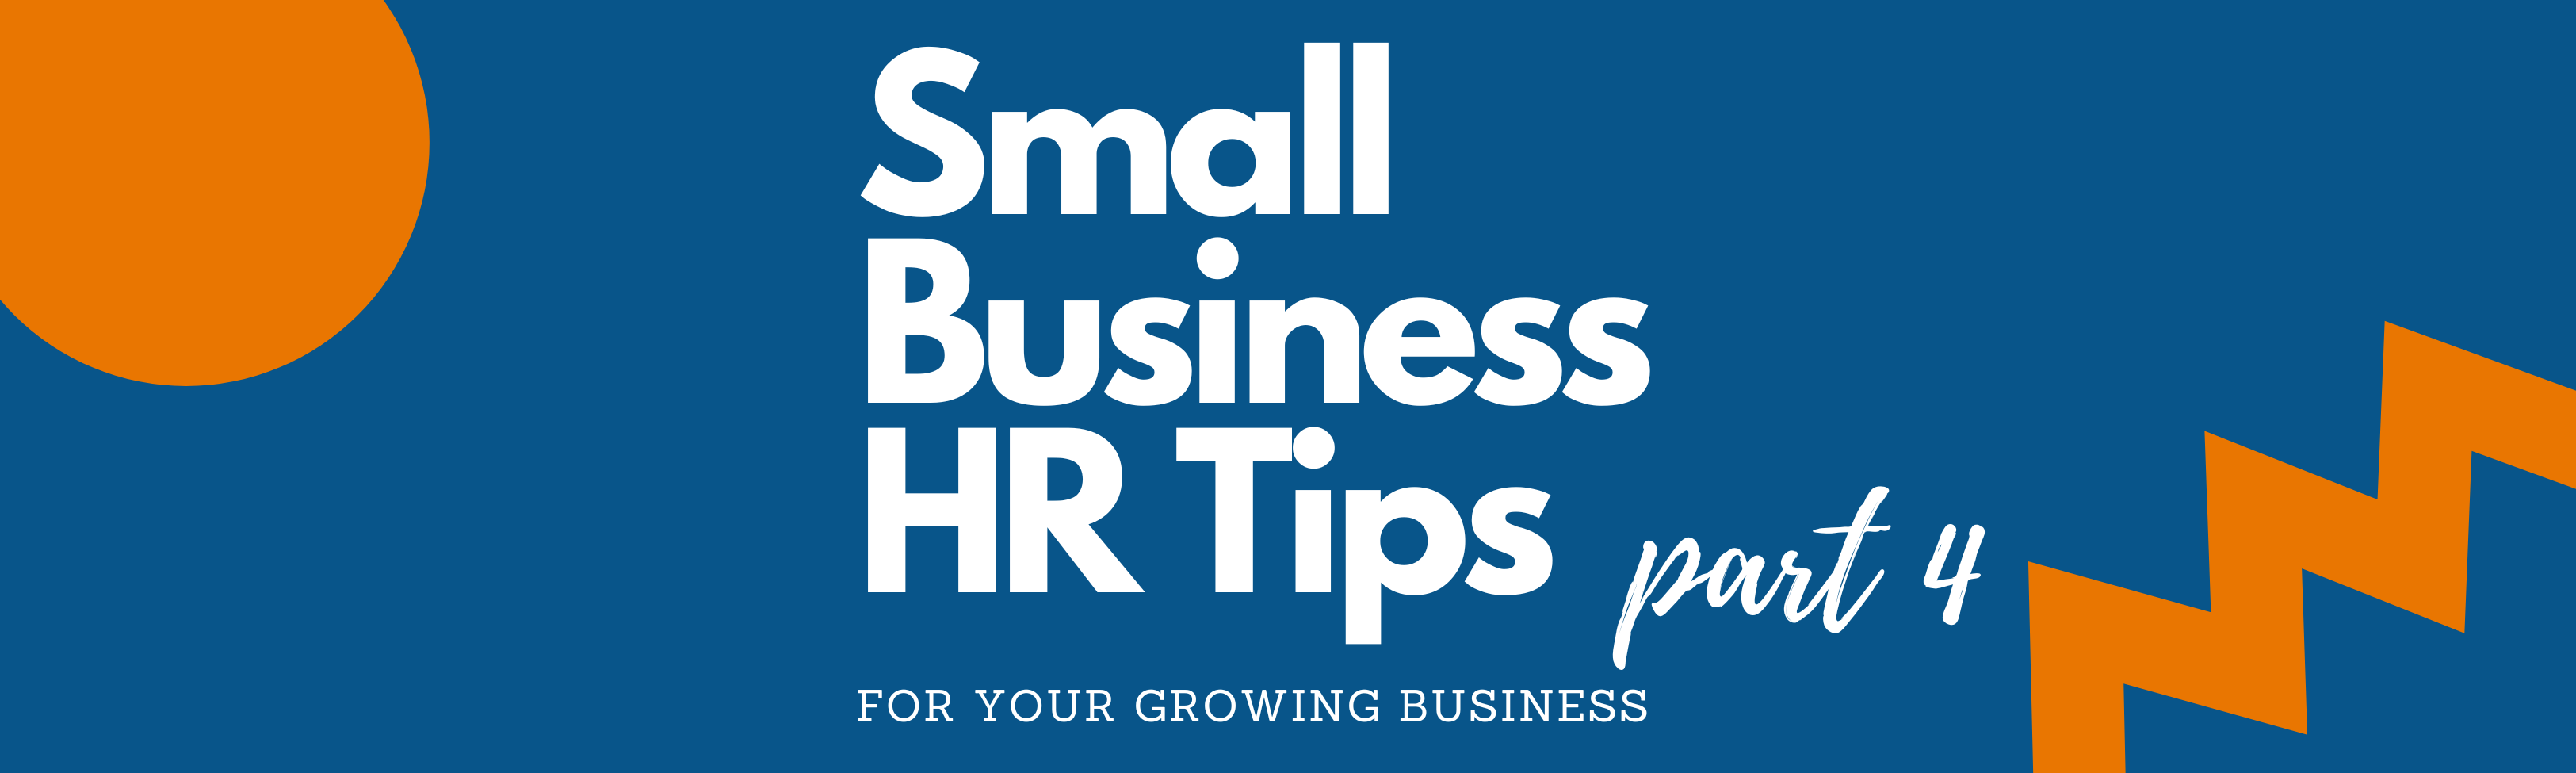 HR Expert Business Help & Tips